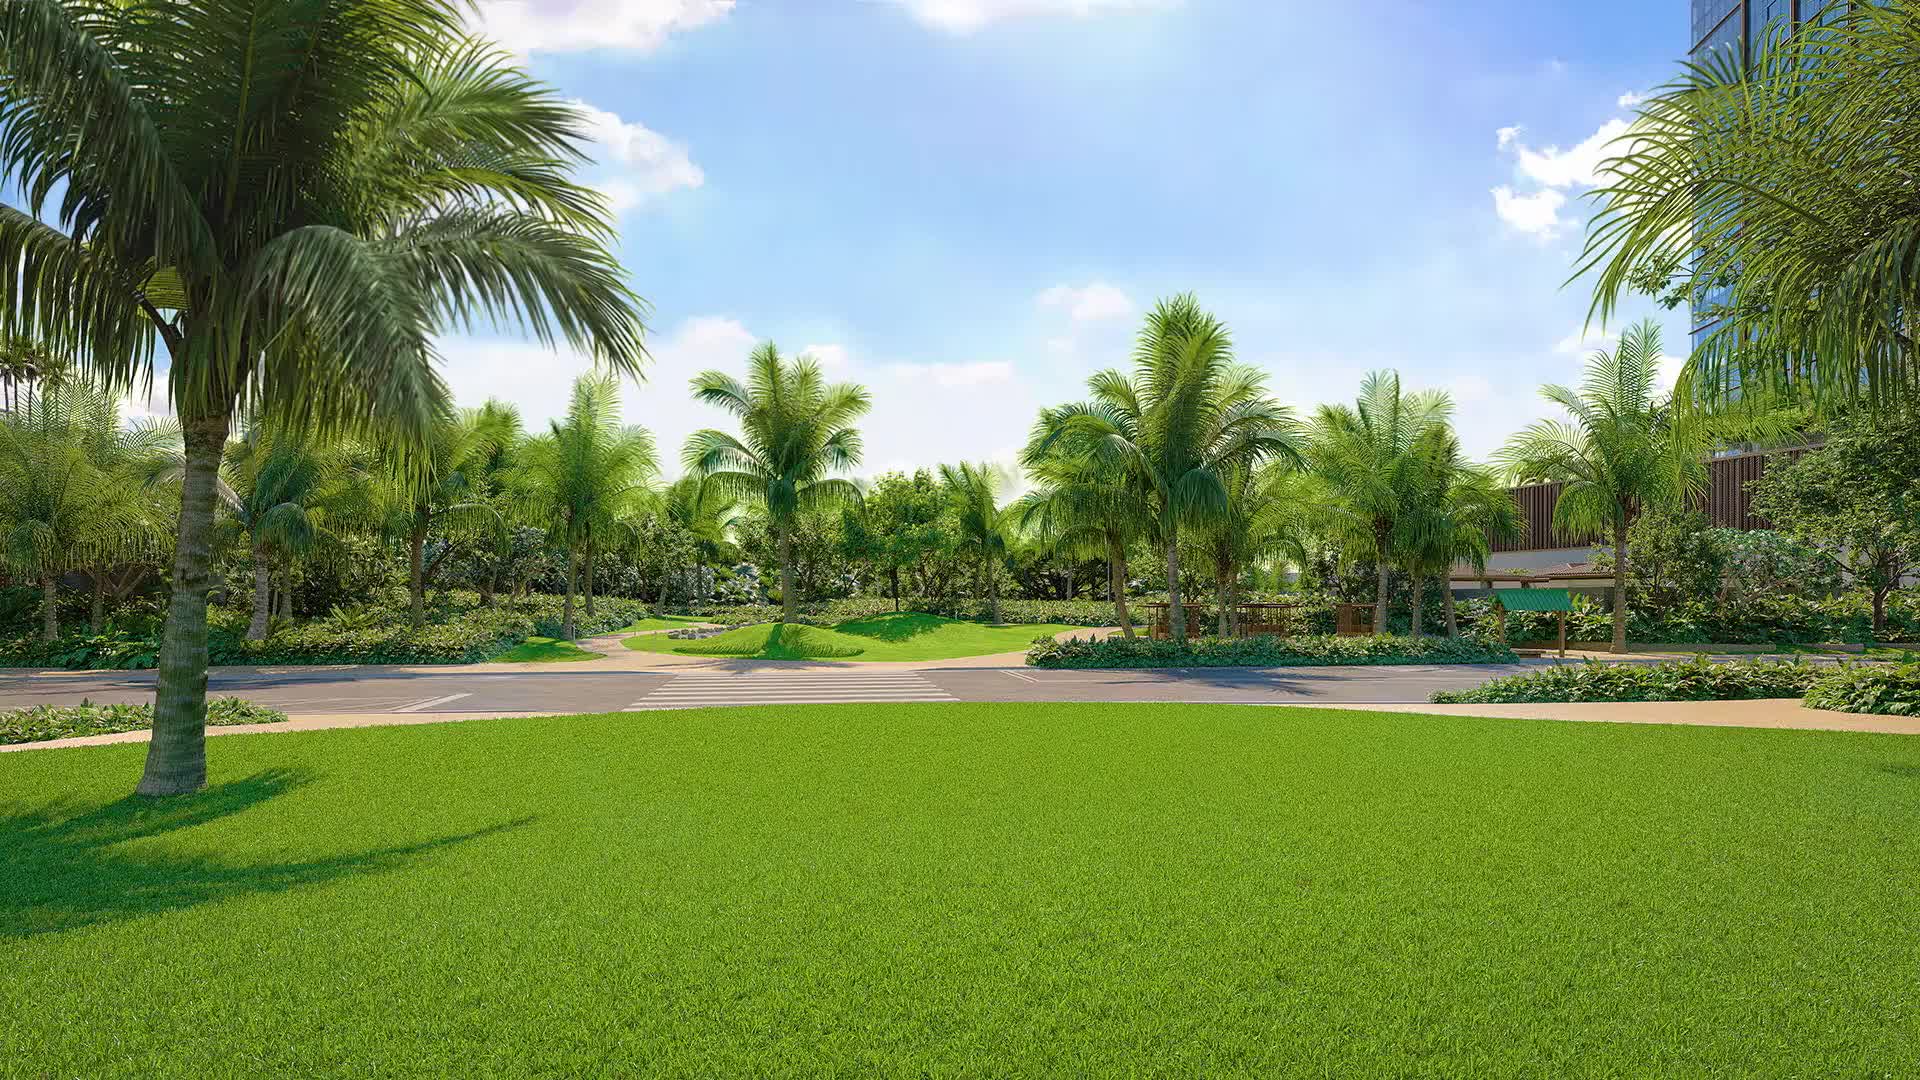 푸른 잔디밭, 야자수, 포장된 산책로가 있는 야외 촬영